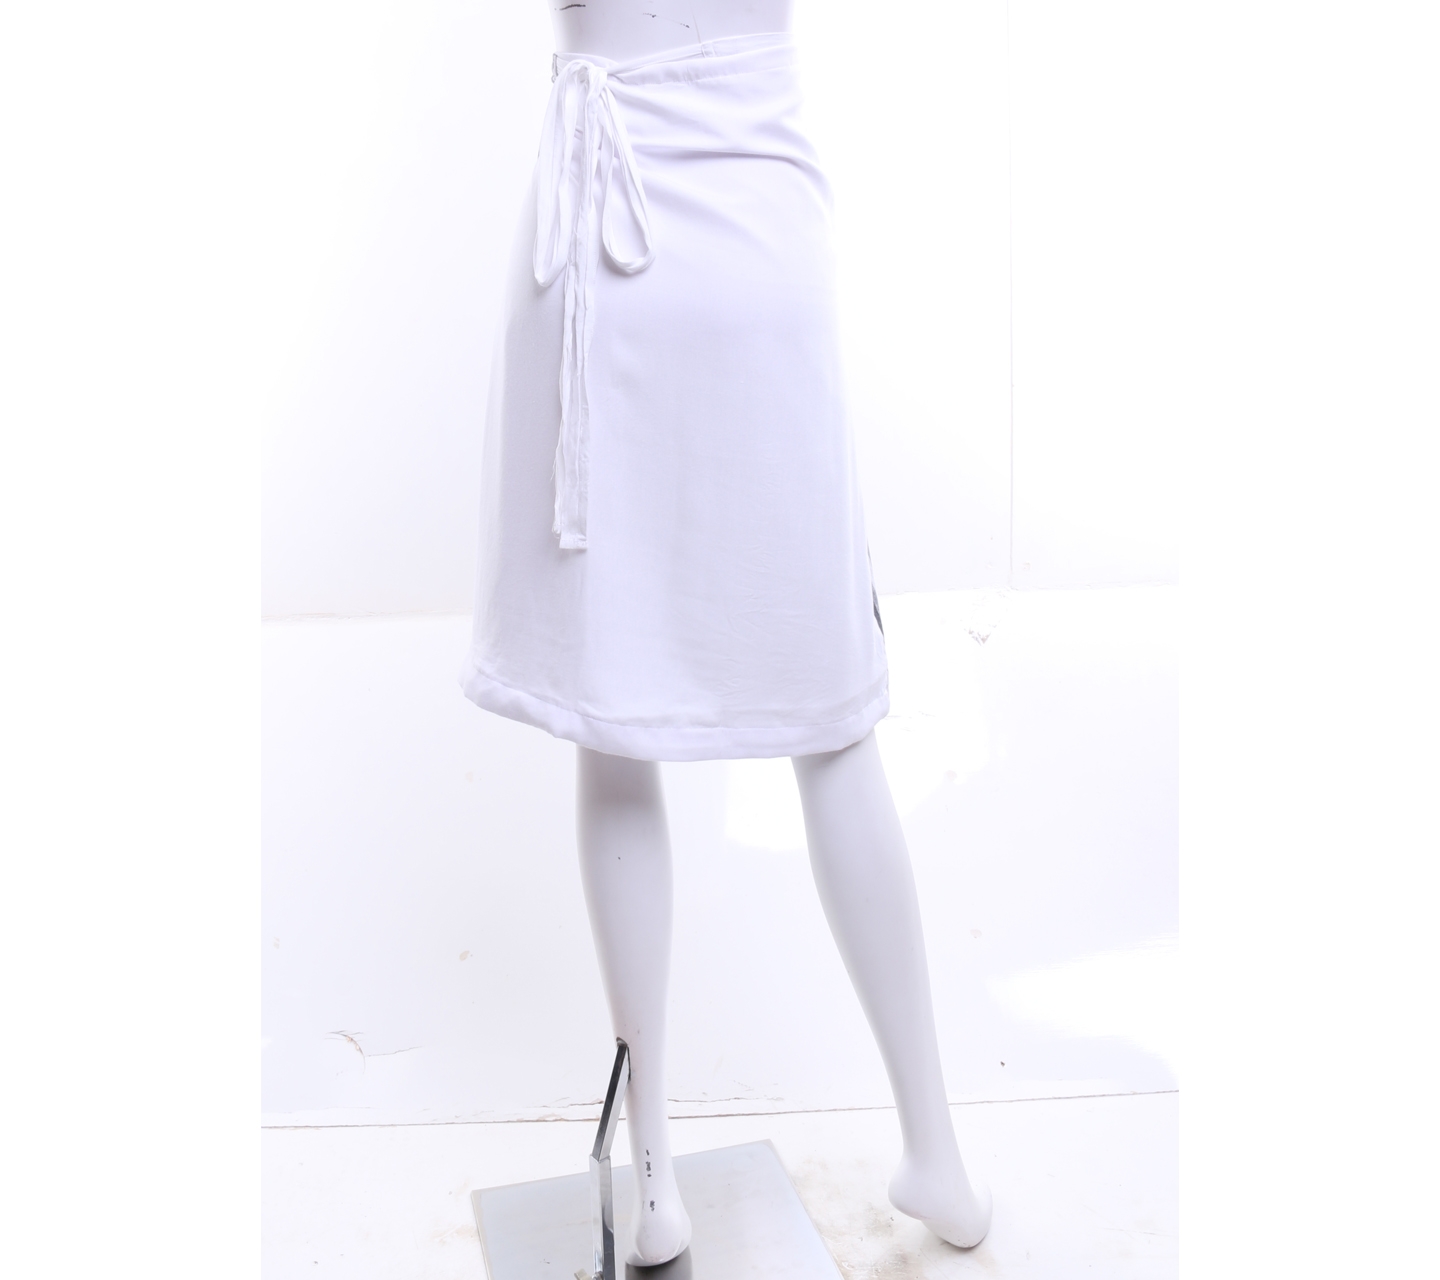 Adzani White And Dark Grey Midi Skirt